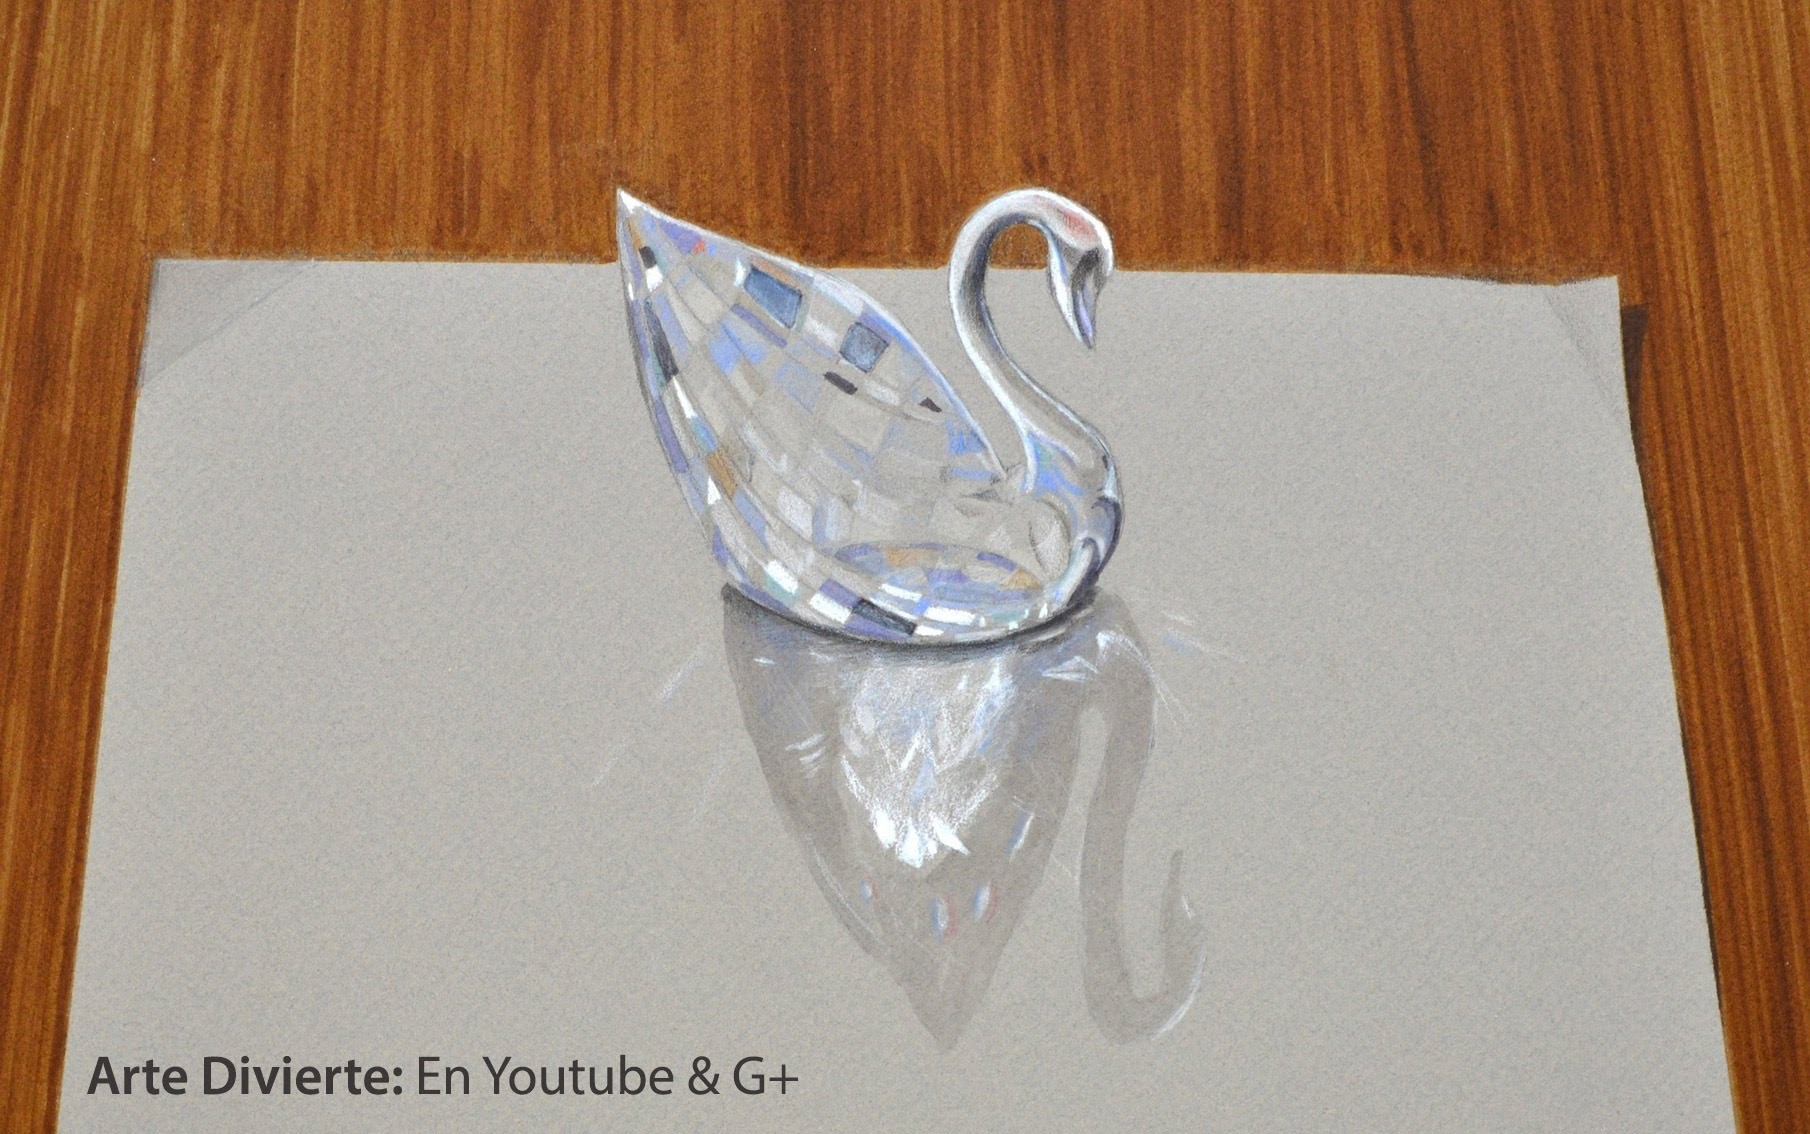 Cómo dibujar vidrio: dibujo 3D de un cisne de cristal Swarovski - Arte Divierte